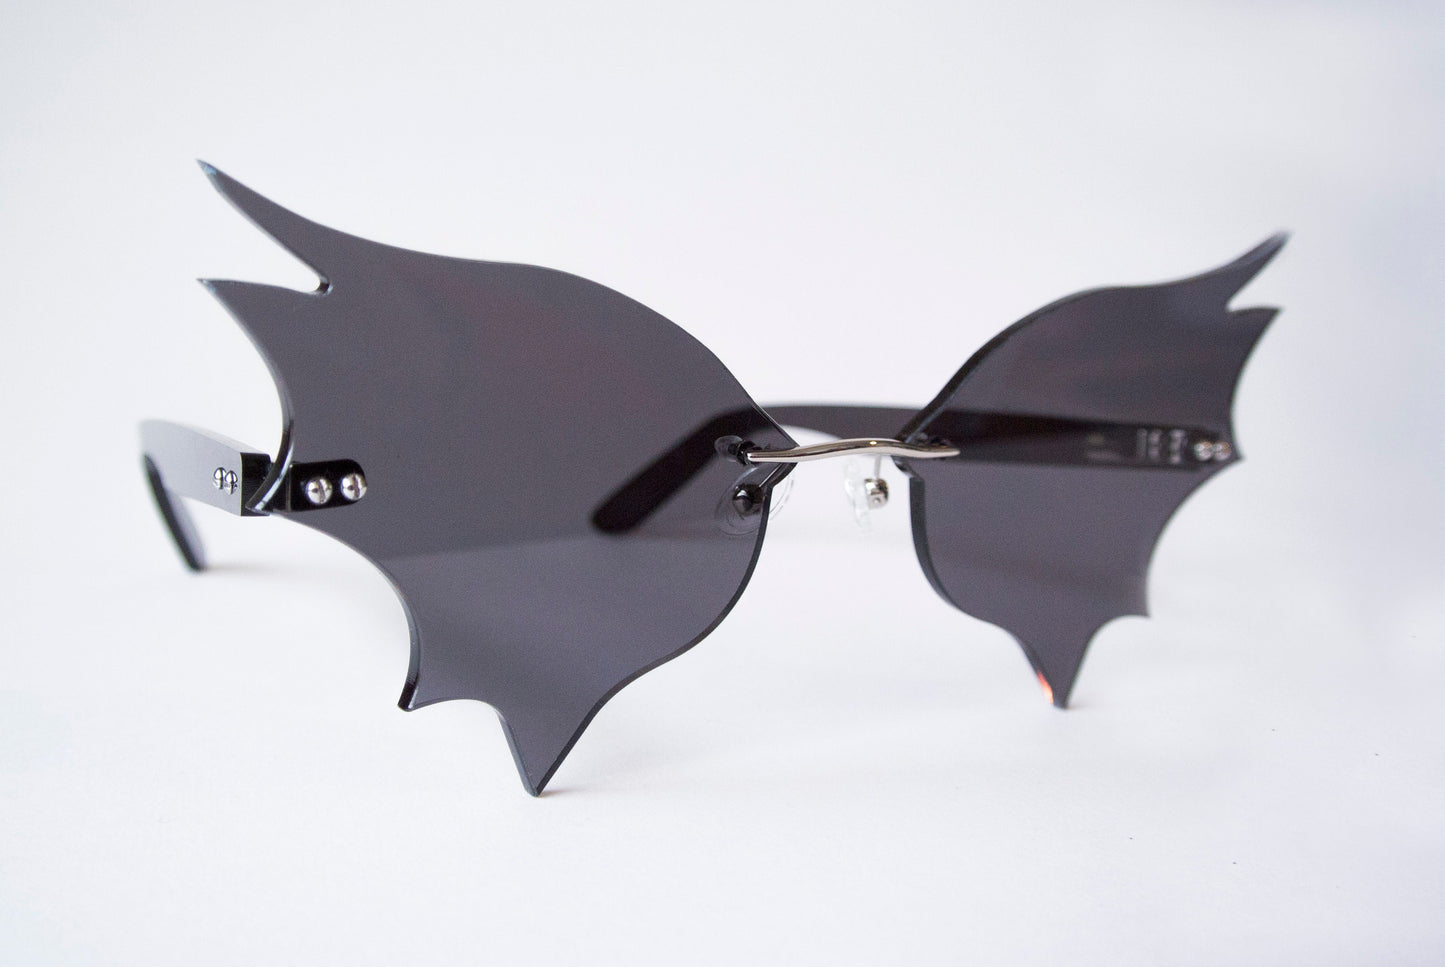 Bat wing shaped sunglasses